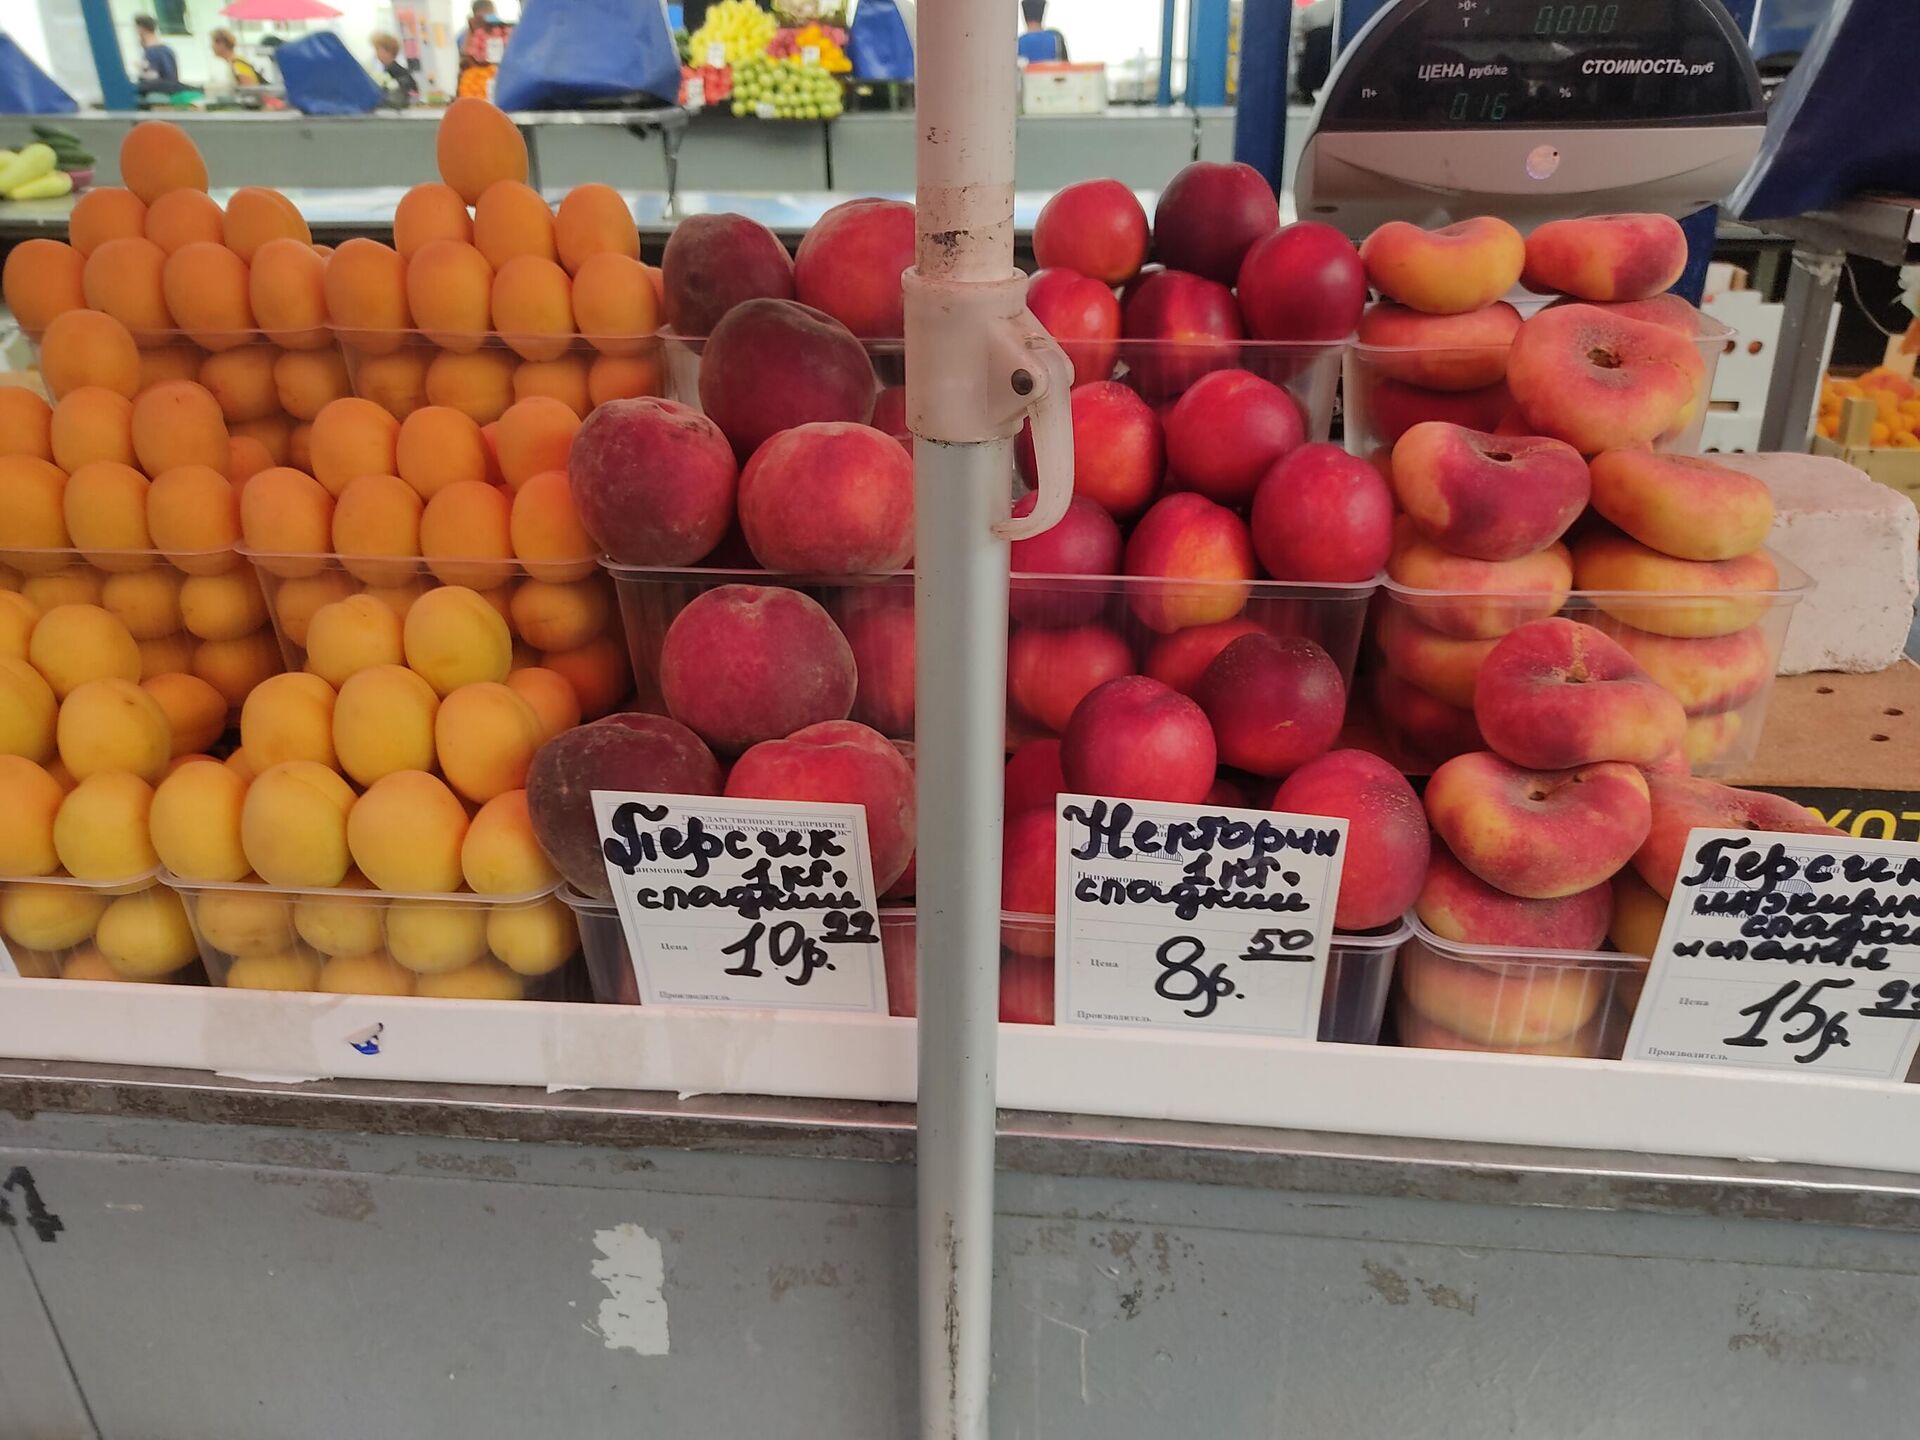 Выбрать персики, нектарины и абрикосы на рынке можно на любой вкус, цвет и, конечно, кошелек - Sputnik Беларусь, 1920, 08.07.2022